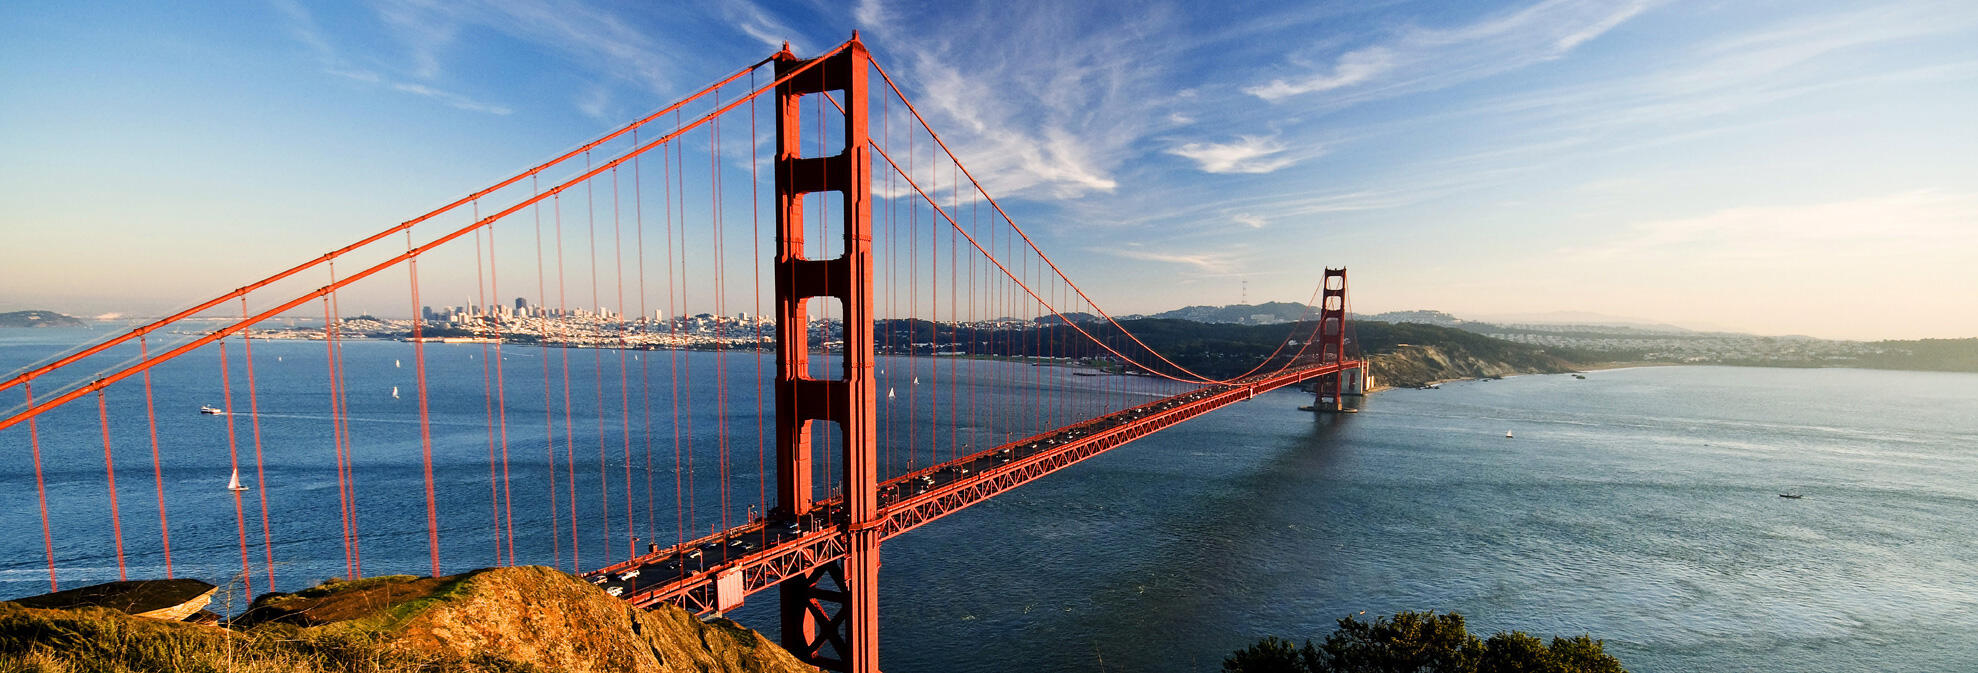 Viaggio di nozze america, Stati Uniti Golden Gate